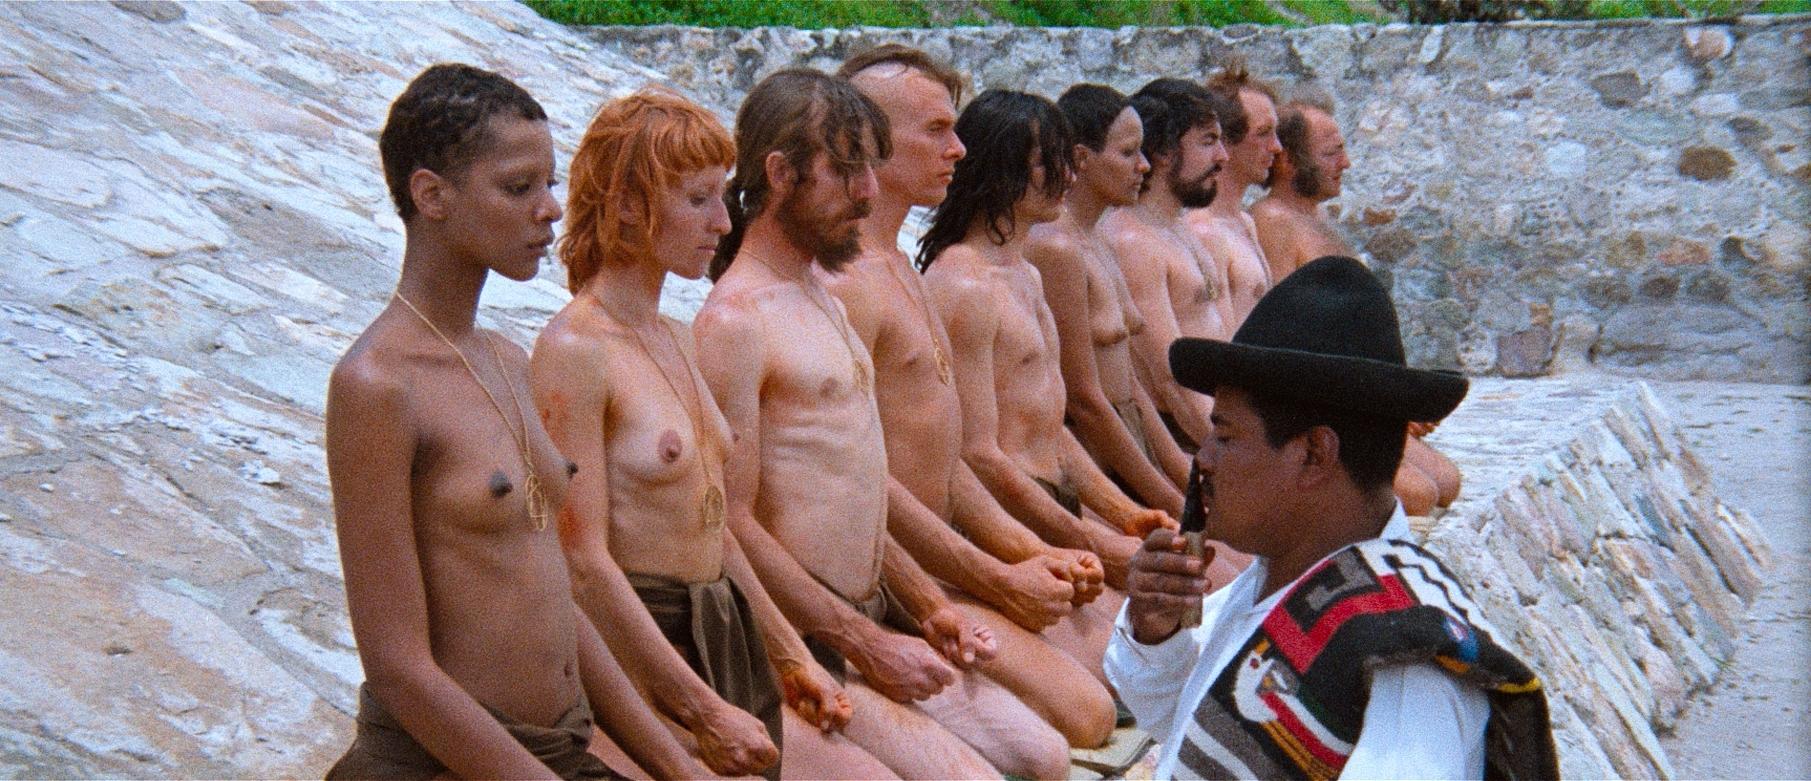 смотреть художественные фильмы с голыми людьми фото 97